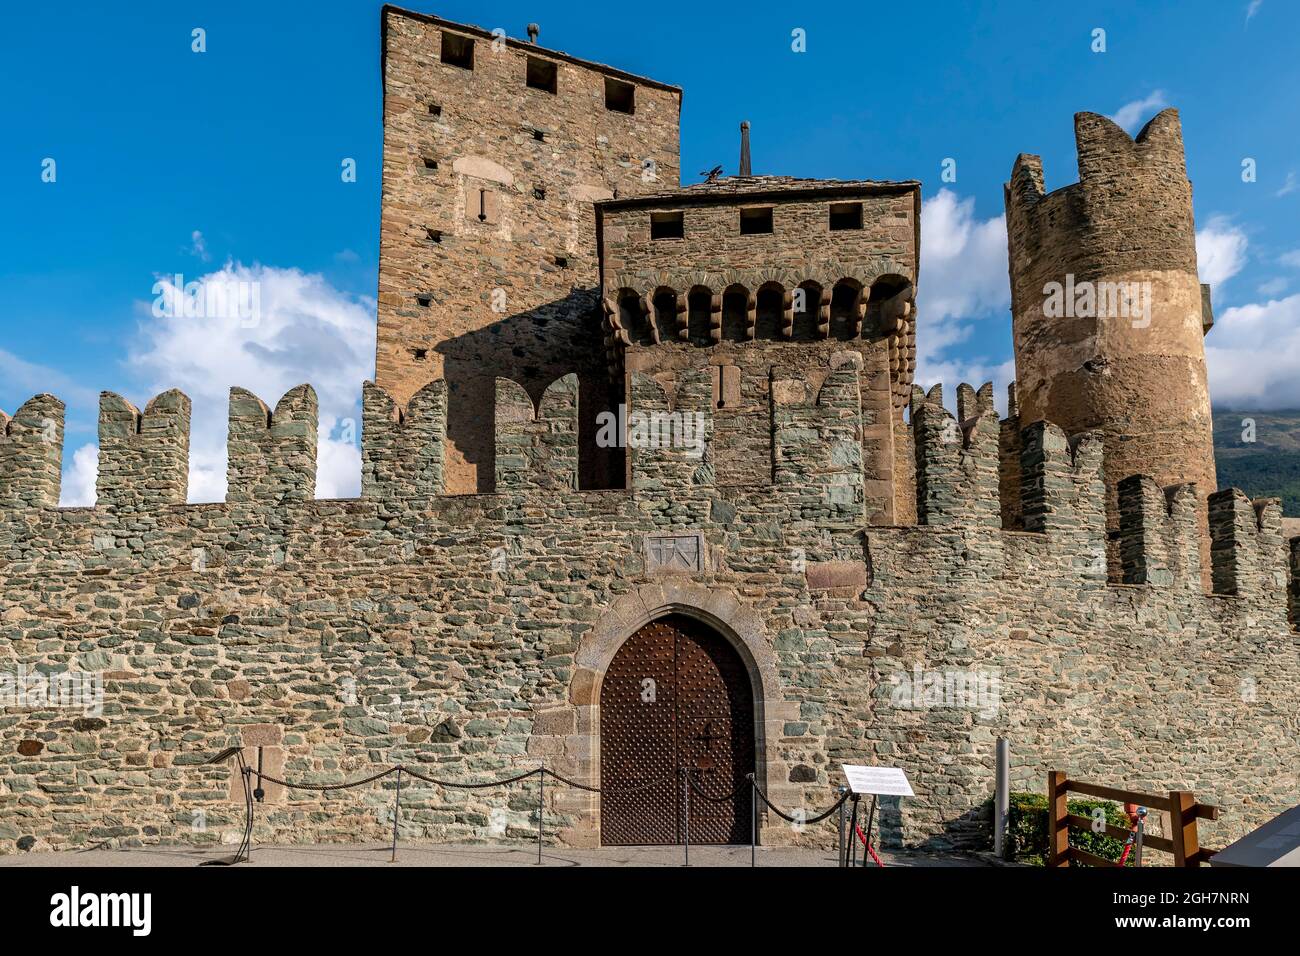 La porta d'ingresso all'antico Castello di Fénis, Valle d'Aosta, Italia, alla prima luce del mattino Foto Stock